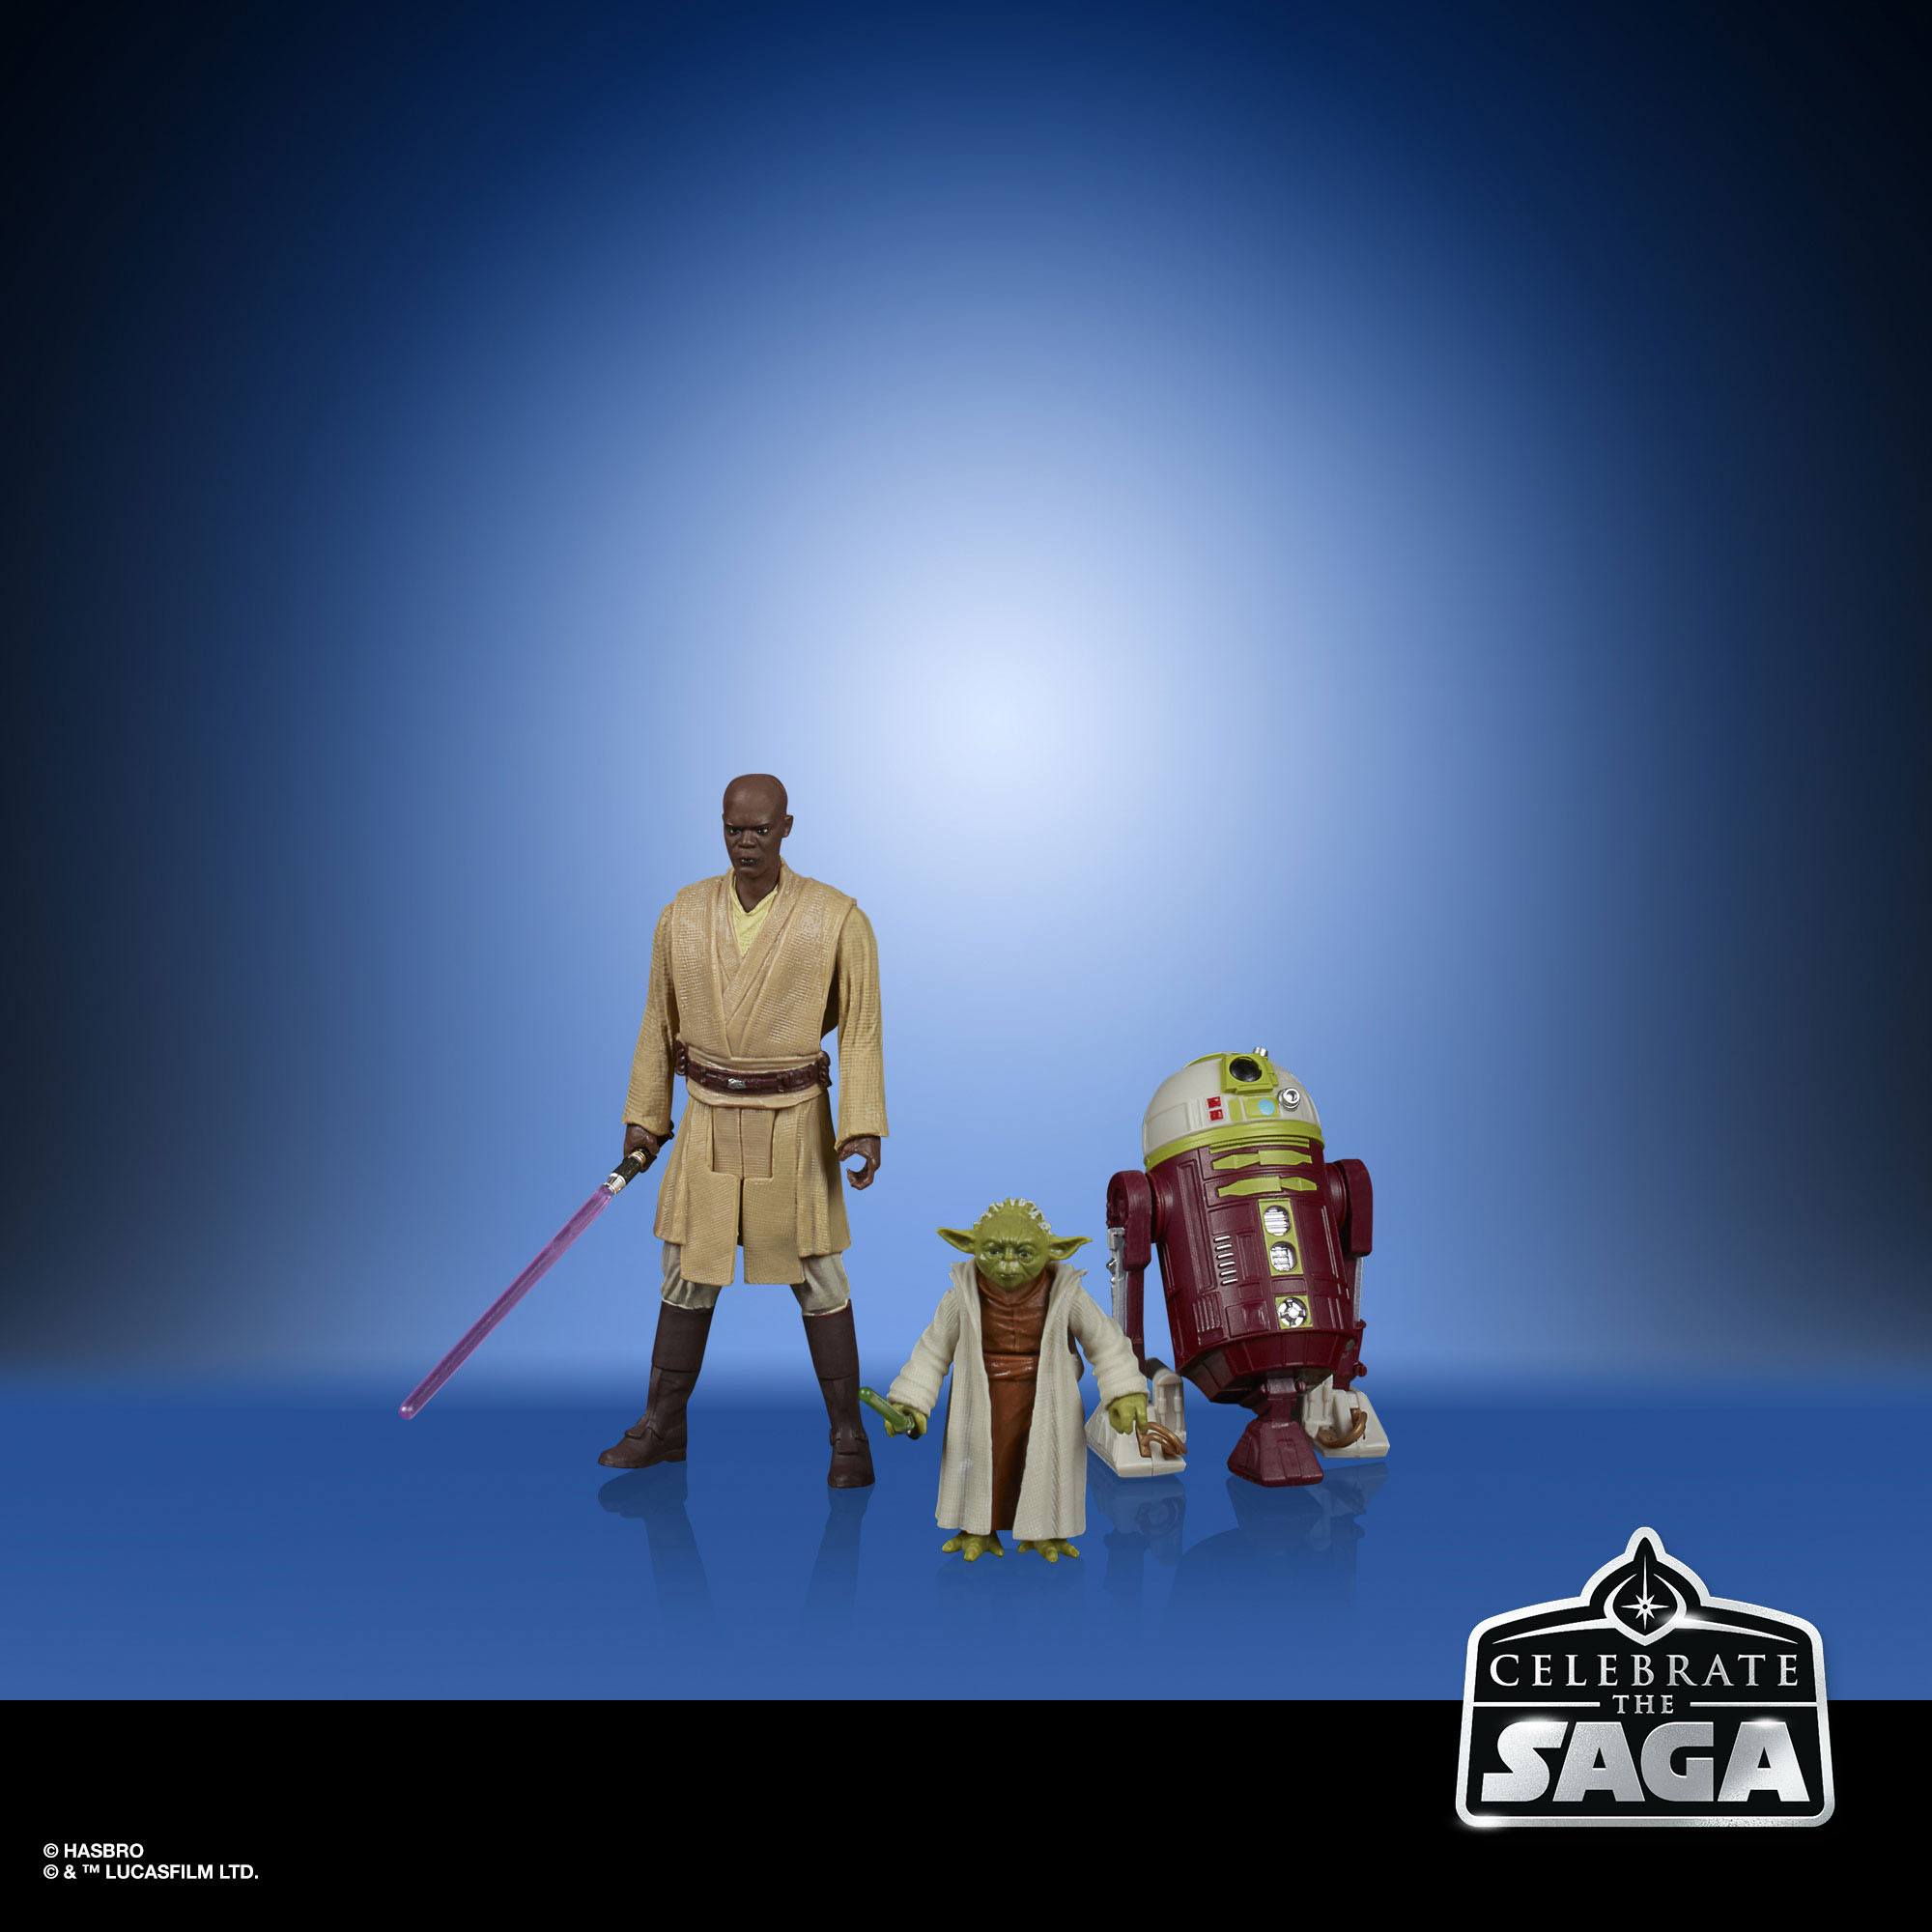 Star Wars Celebrate the Saga Actionfiguren 5er-Pack 2020 Jedi Order 10 cm HASF1413 5010993782512